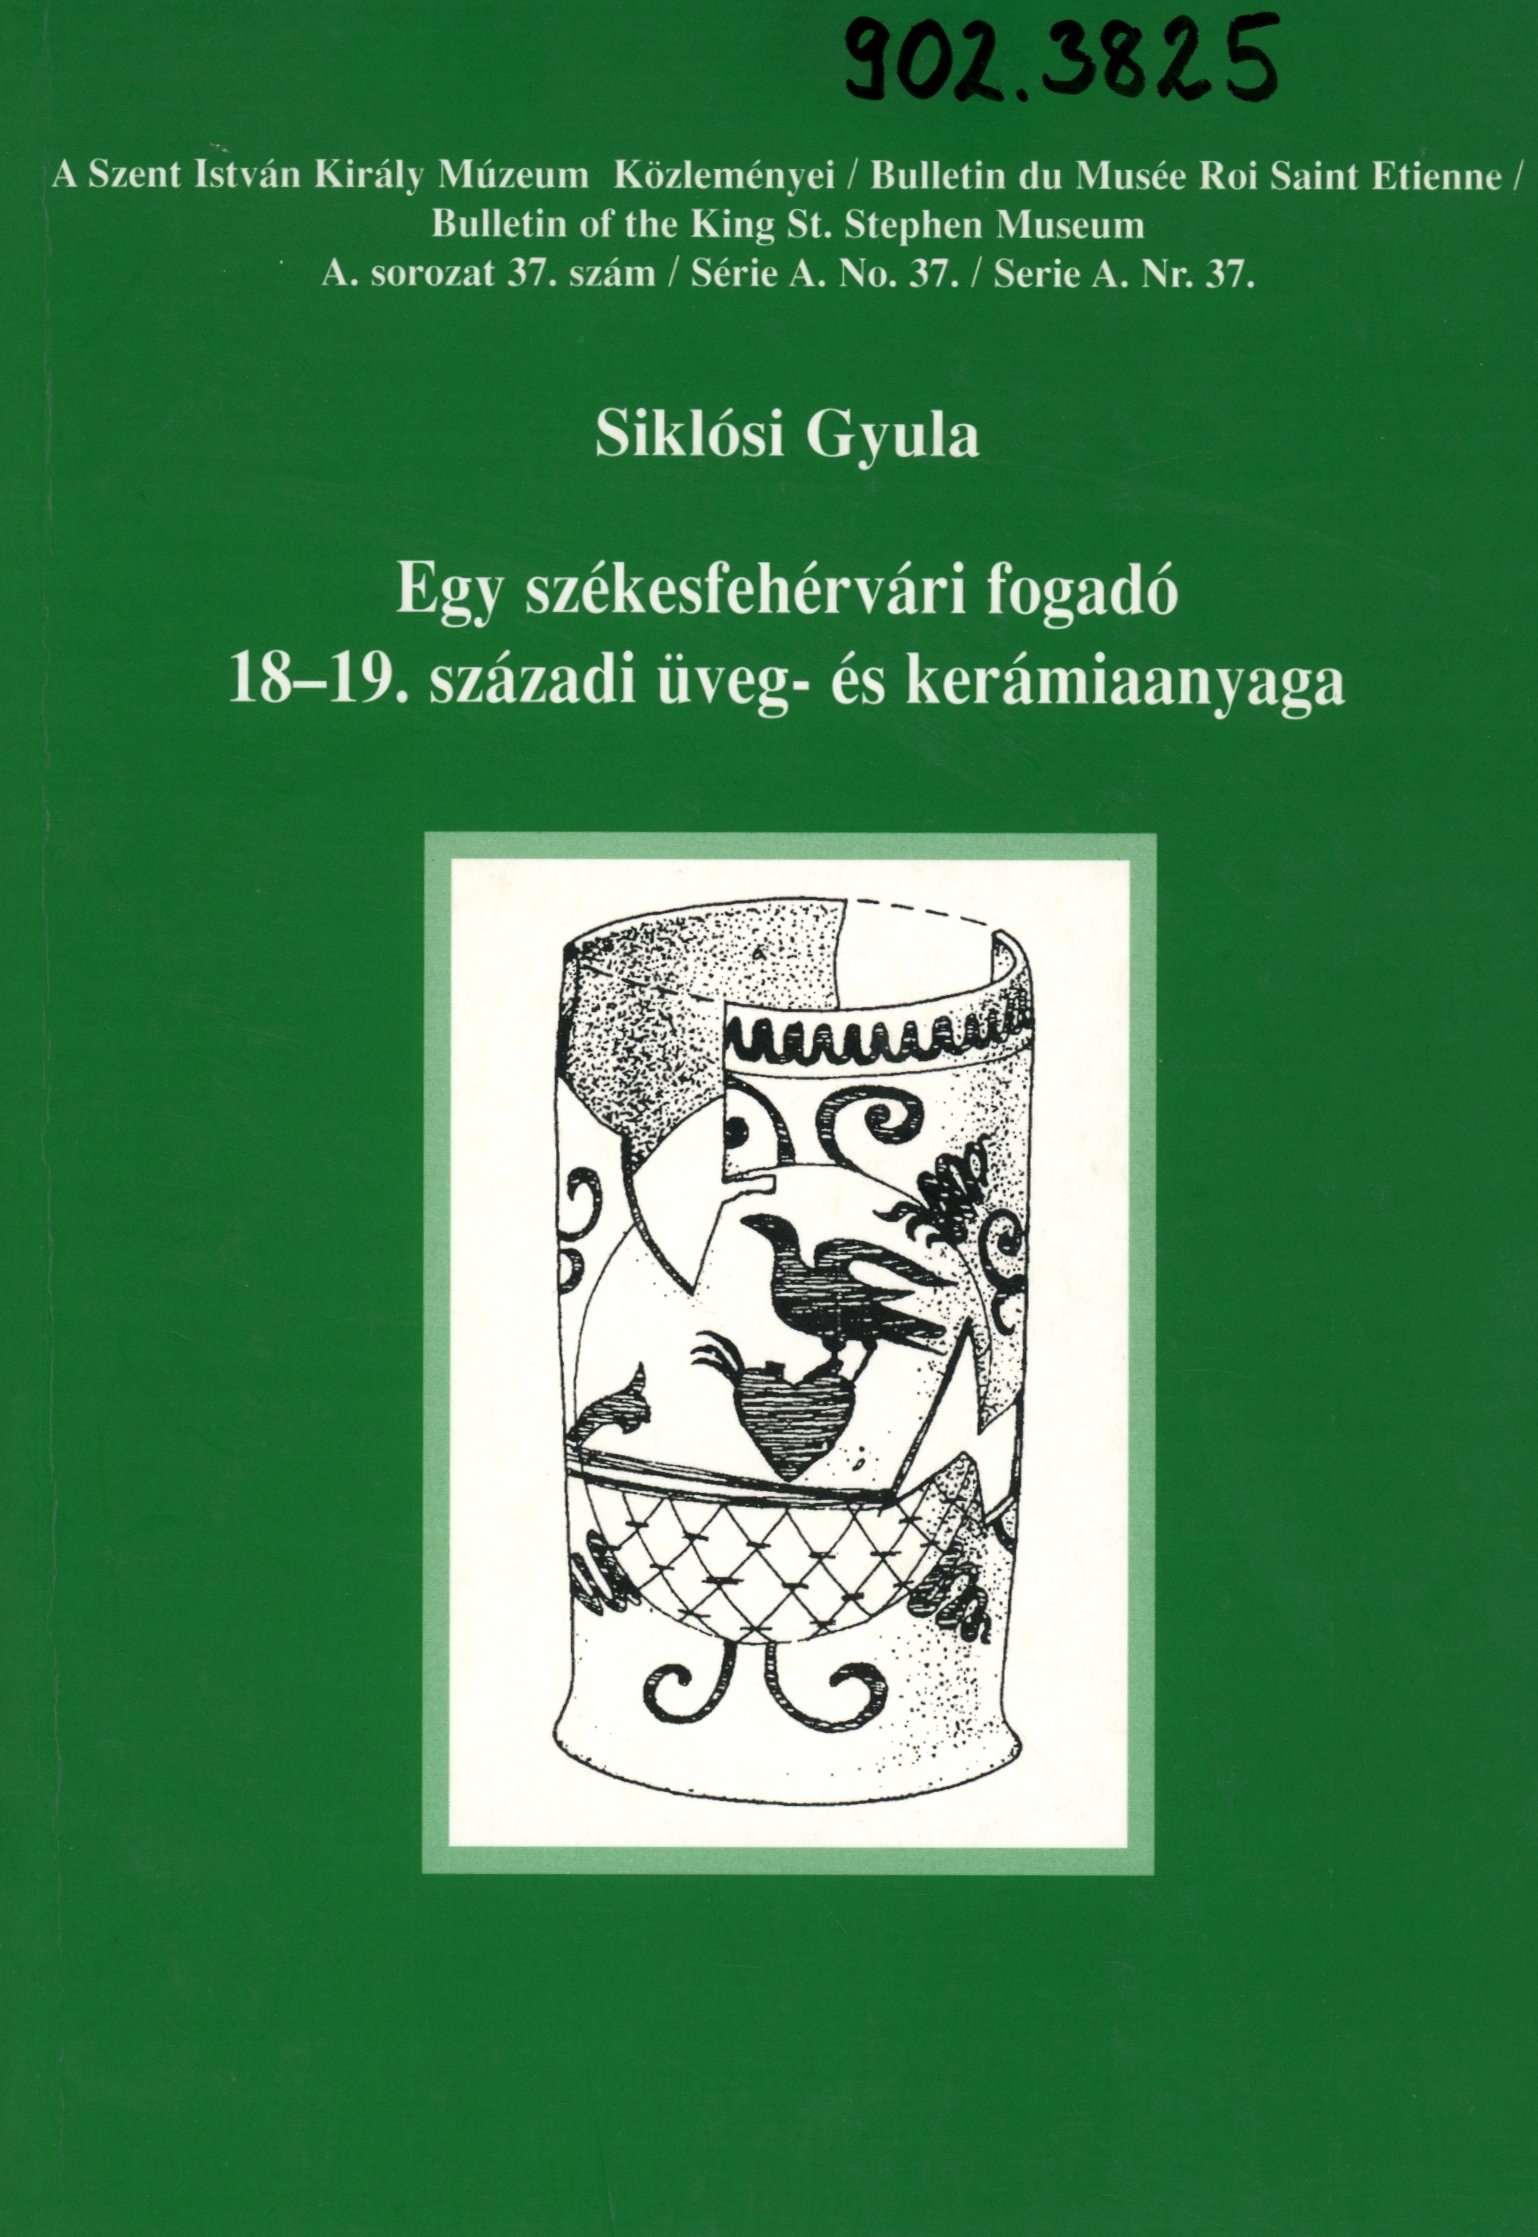 Siklósi Gyula (Erkel Ferenc Múzeum és Könyvtár, Gyula CC BY-NC-SA)